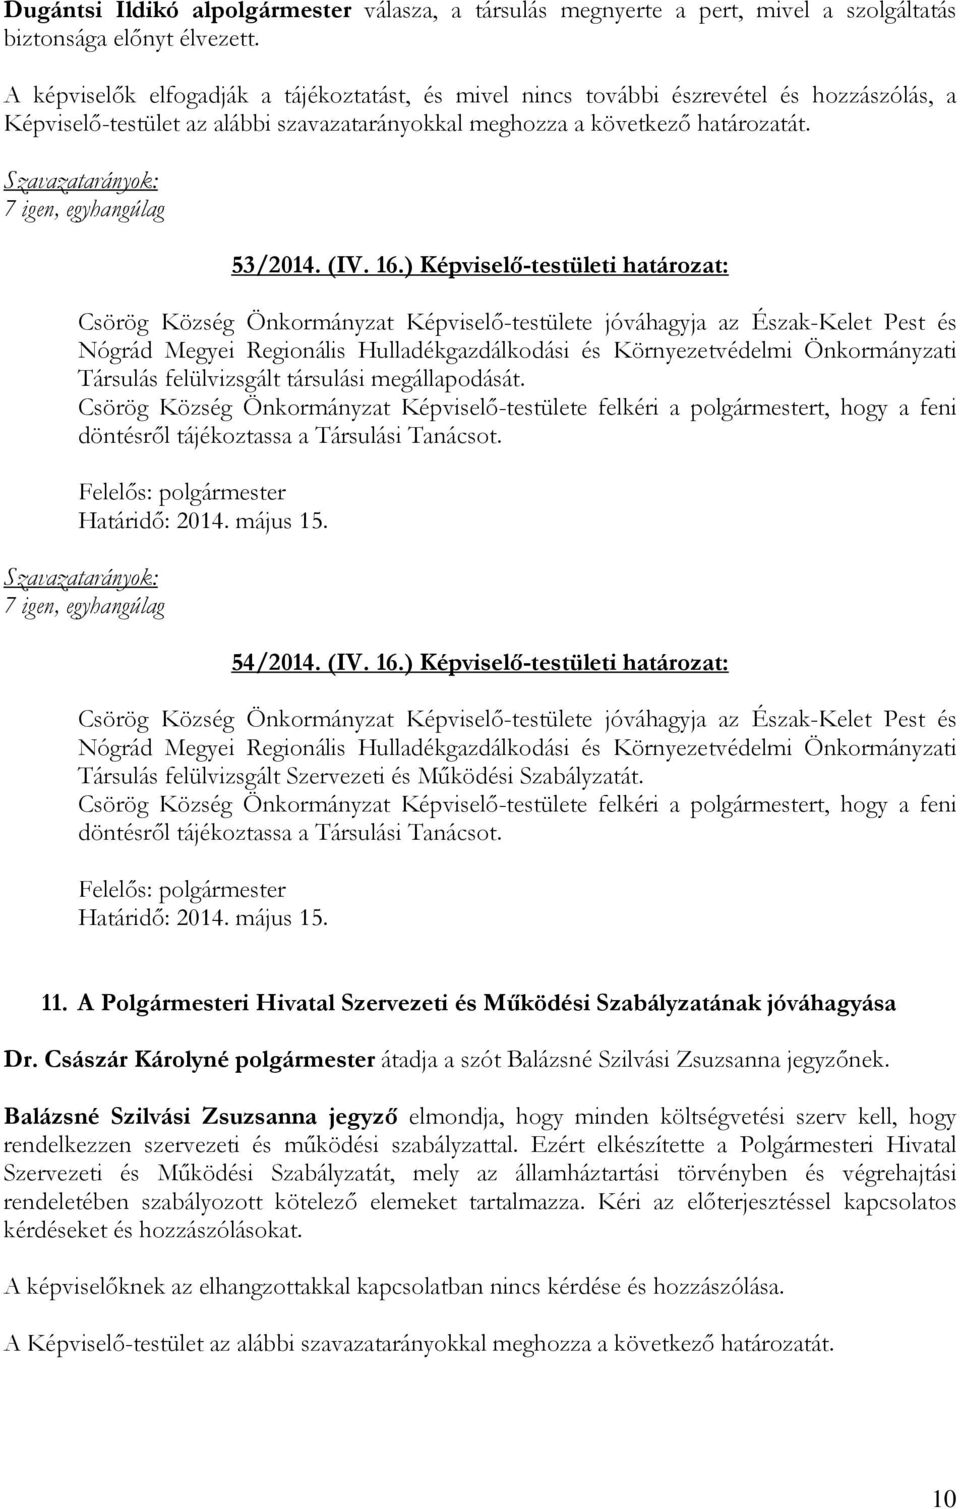 ) Képviselő-testületi határozat: Csörög Község Önkormányzat Képviselő-testülete jóváhagyja az Észak-Kelet Pest és Nógrád Megyei Regionális Hulladékgazdálkodási és Környezetvédelmi Önkormányzati